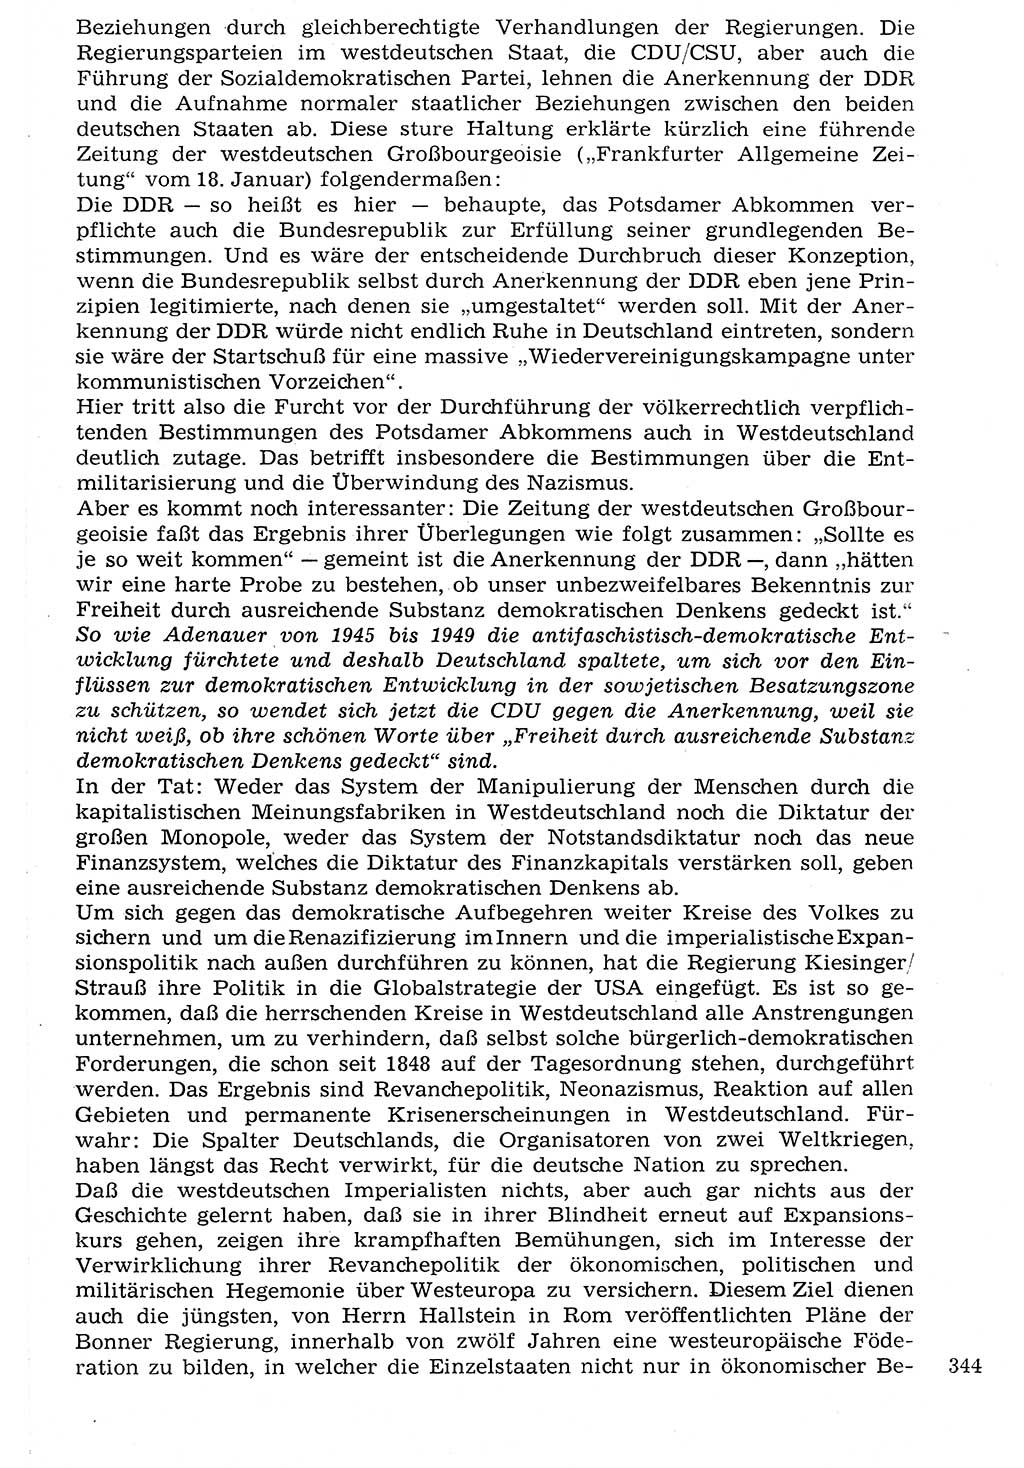 Staat und Recht (StuR), 17. Jahrgang [Deutsche Demokratische Republik (DDR)] 1968, Seite 344 (StuR DDR 1968, S. 344)